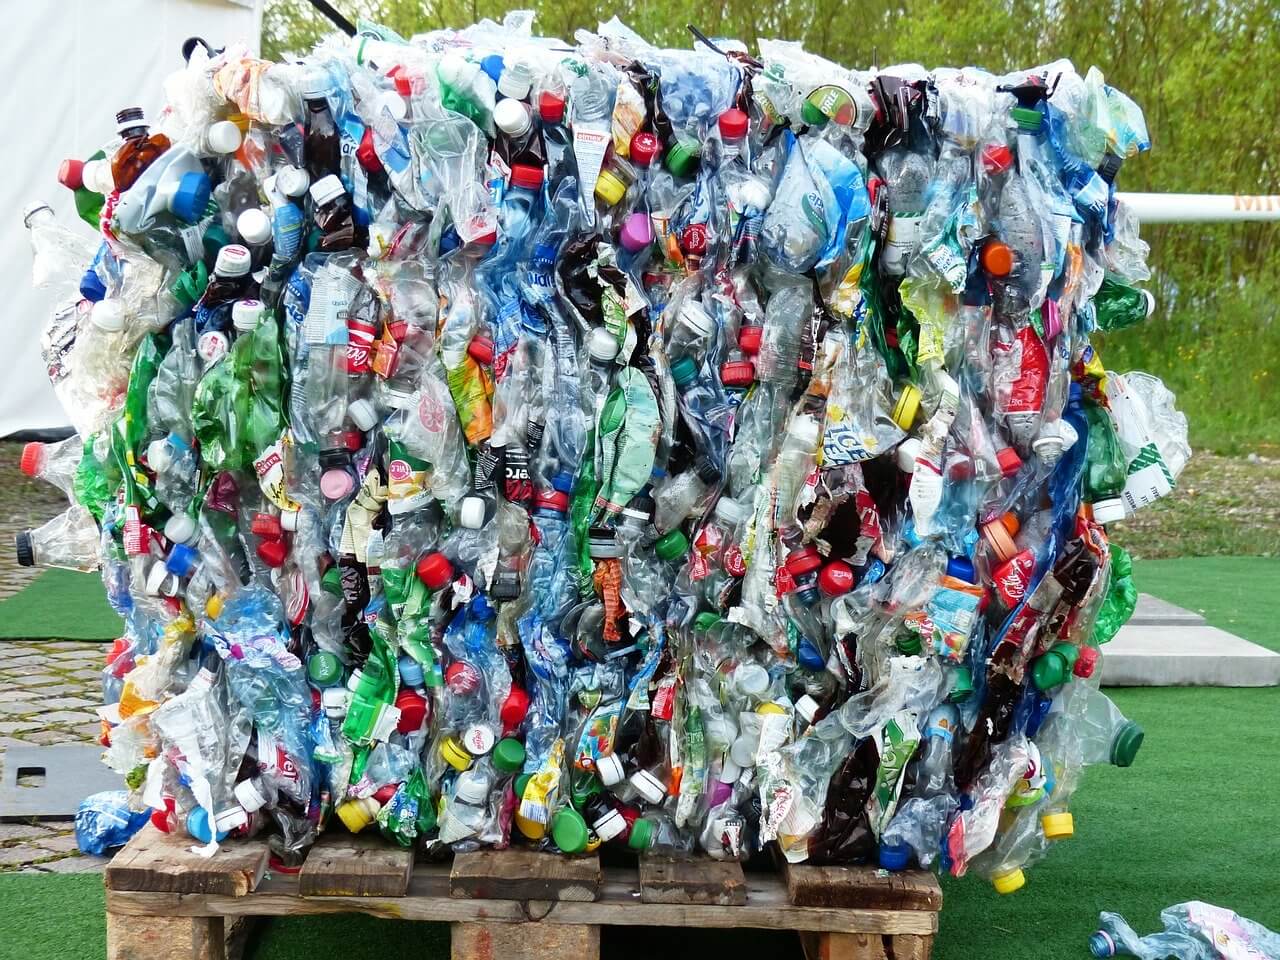 Auf diesem Bild sind viele zusammengeknüllte Plastikflaschen zu sehen.